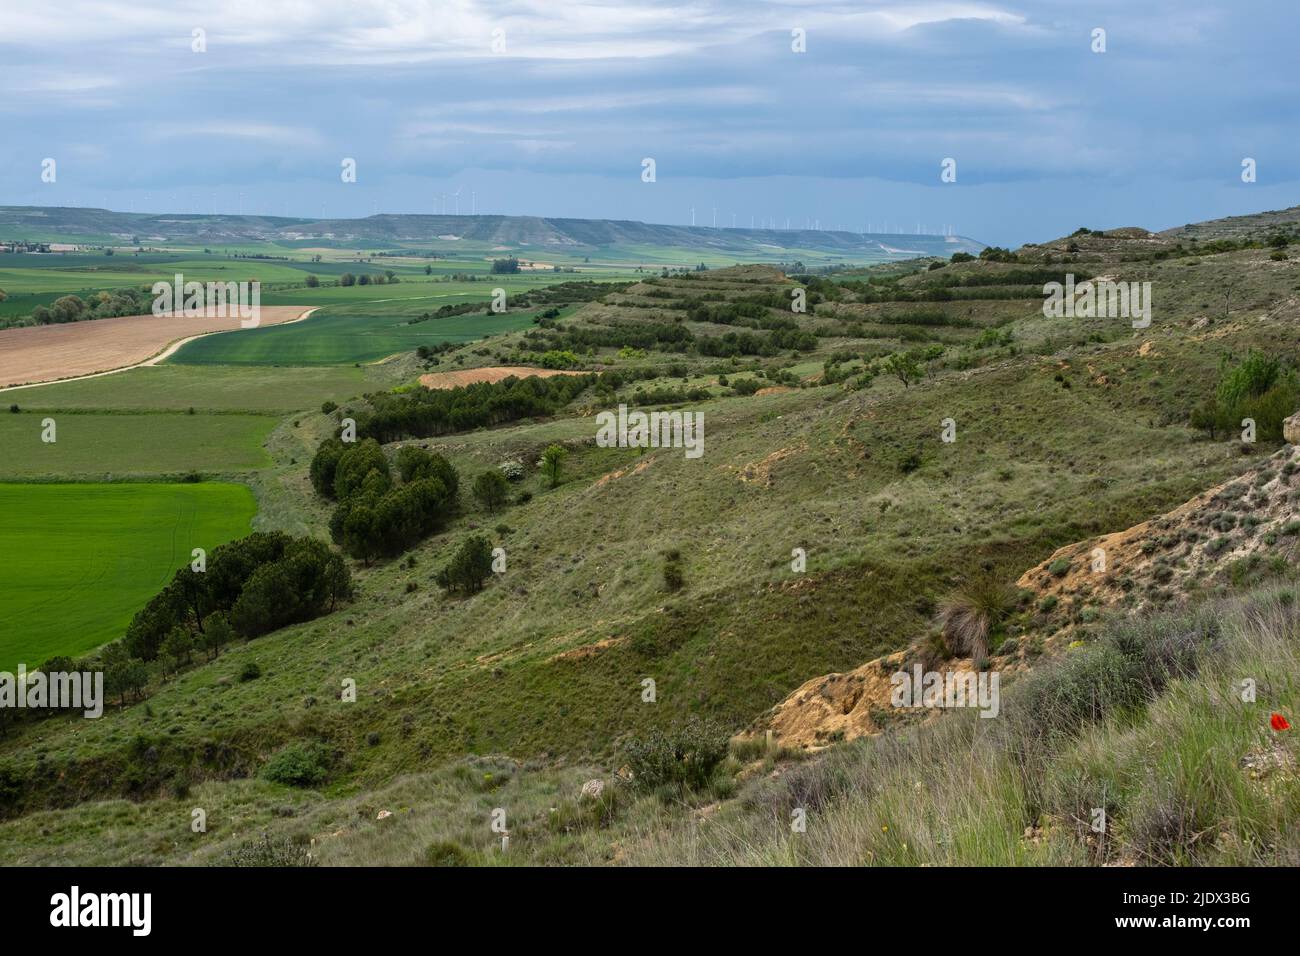 Spanien, Kastilien und Leon. Blick auf die Landschaft beim Aufstieg des Camino de Santiago in der Nähe von Castrojeriz. Windmühlen säen den Grat in der Ferne. Stockfoto